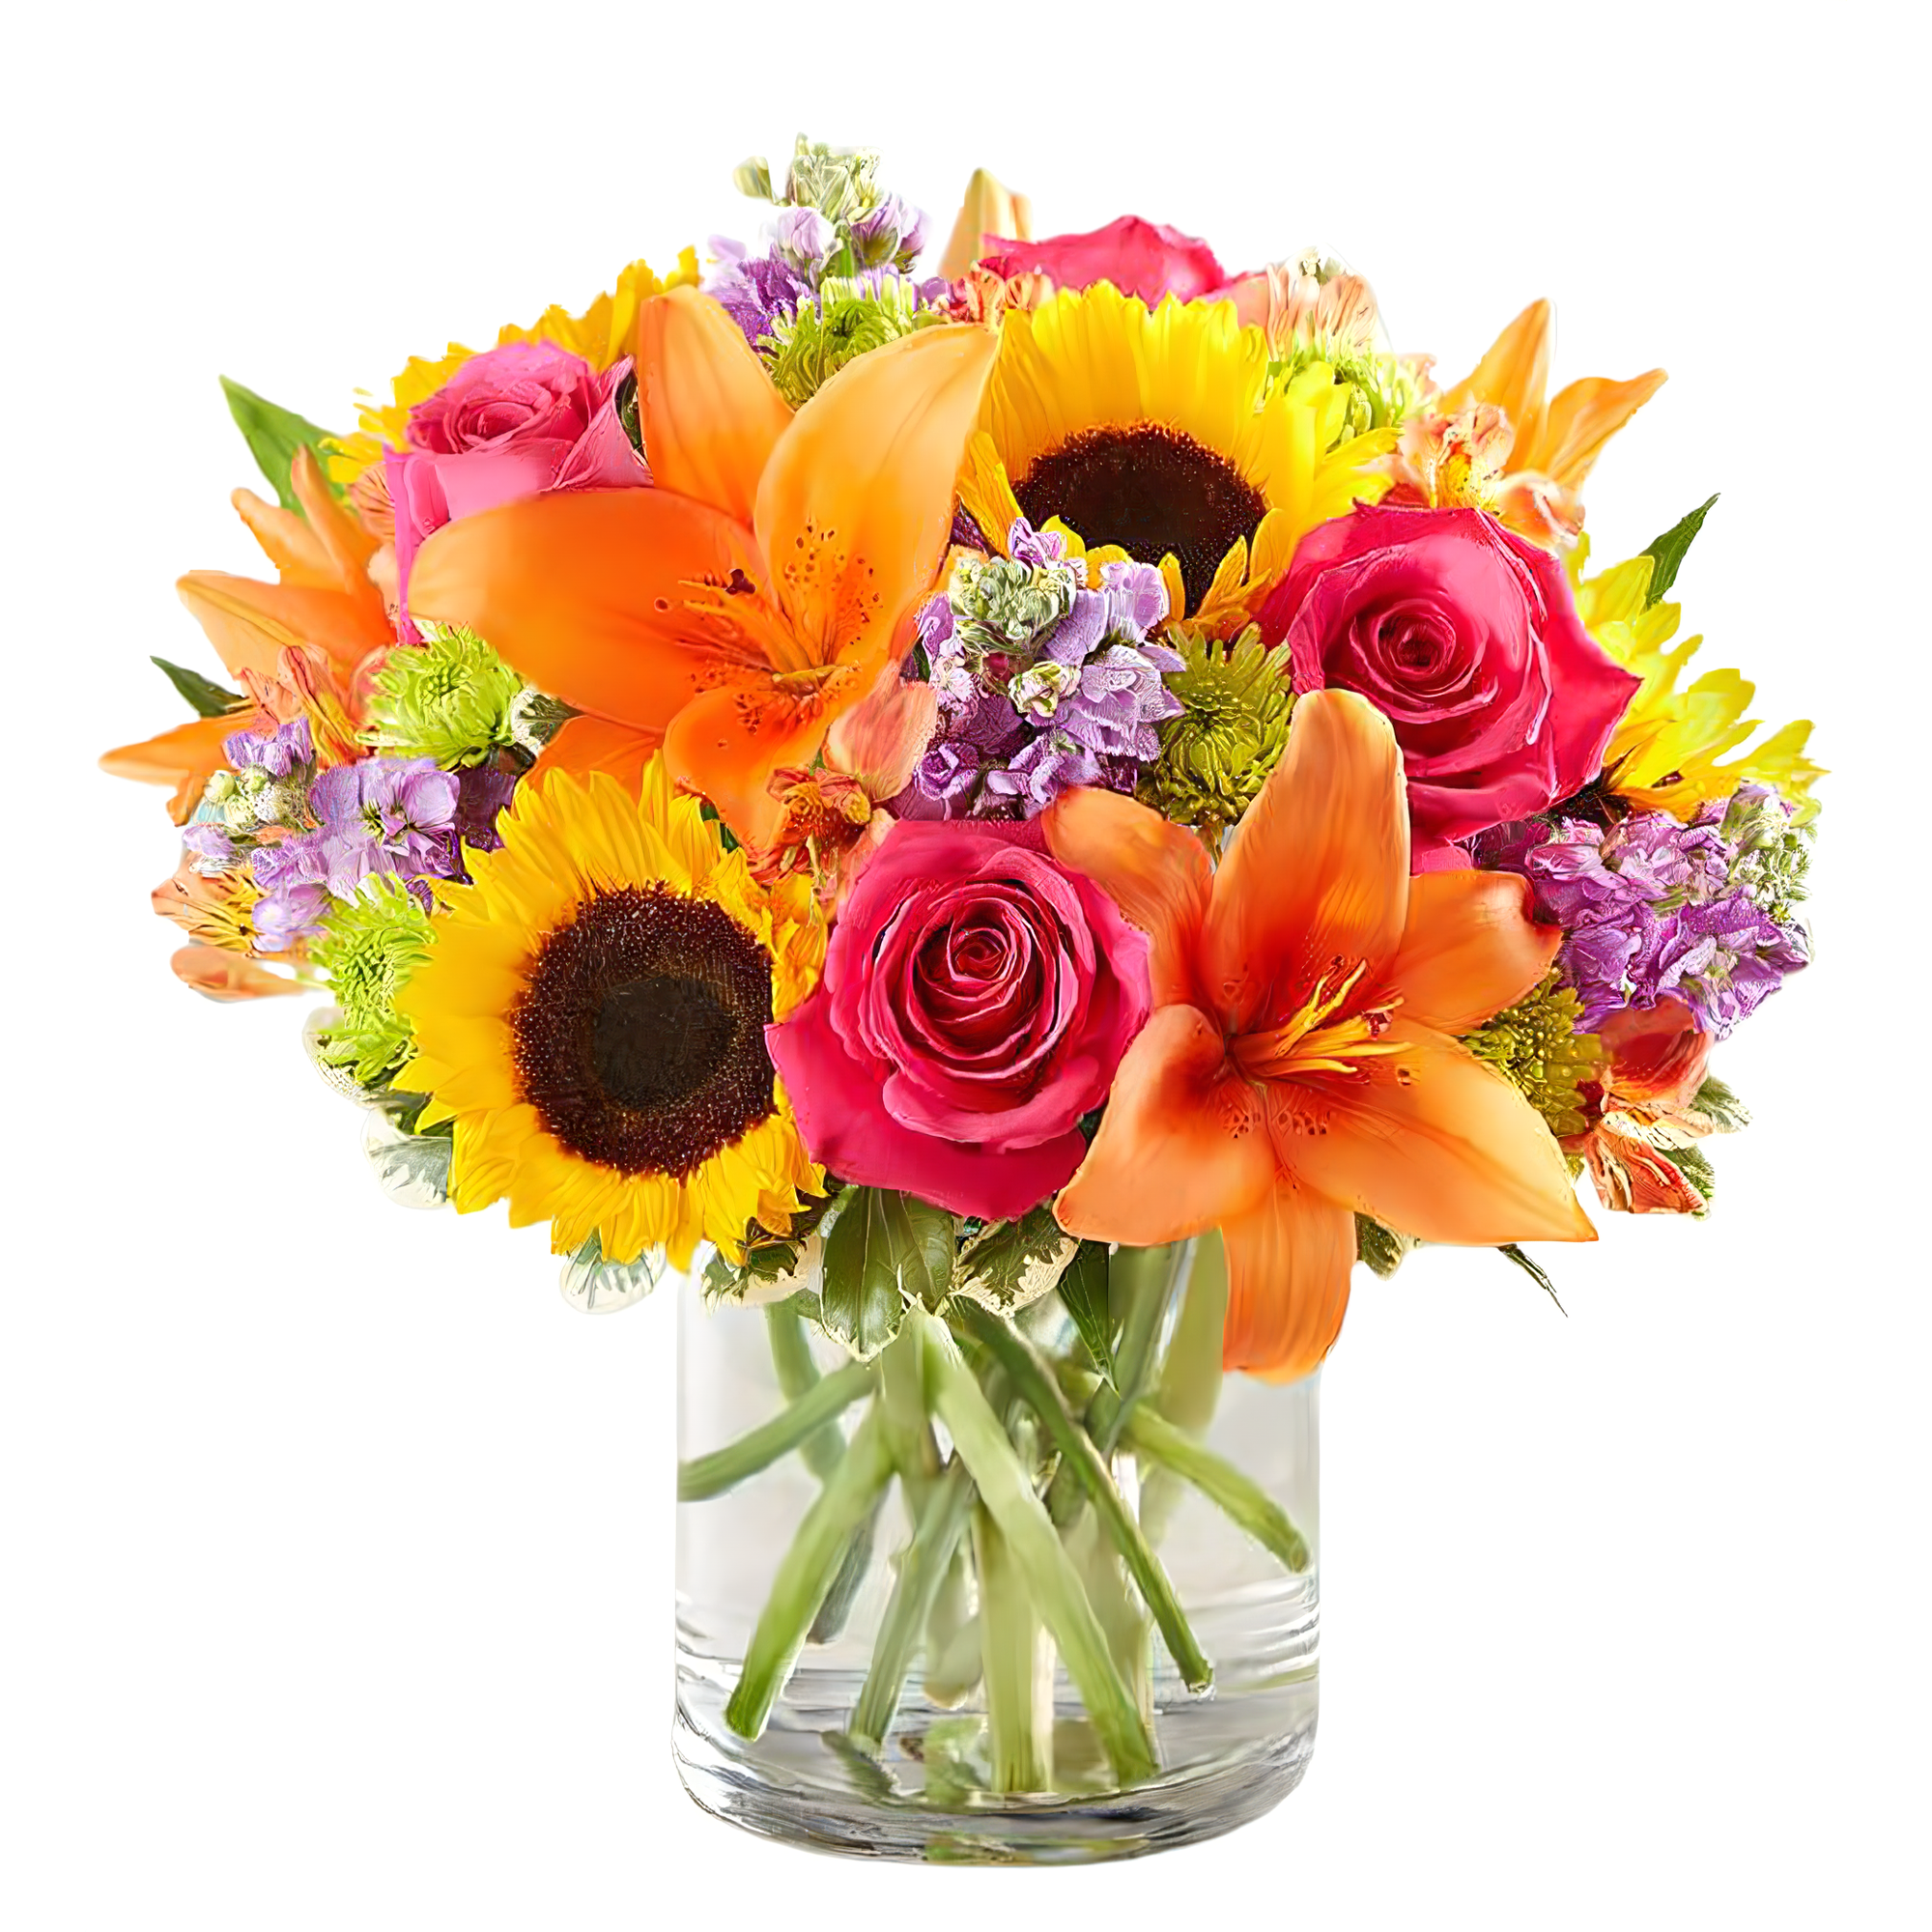 Manhattan Flower Delivery - Floral Fantasy - Birthdays